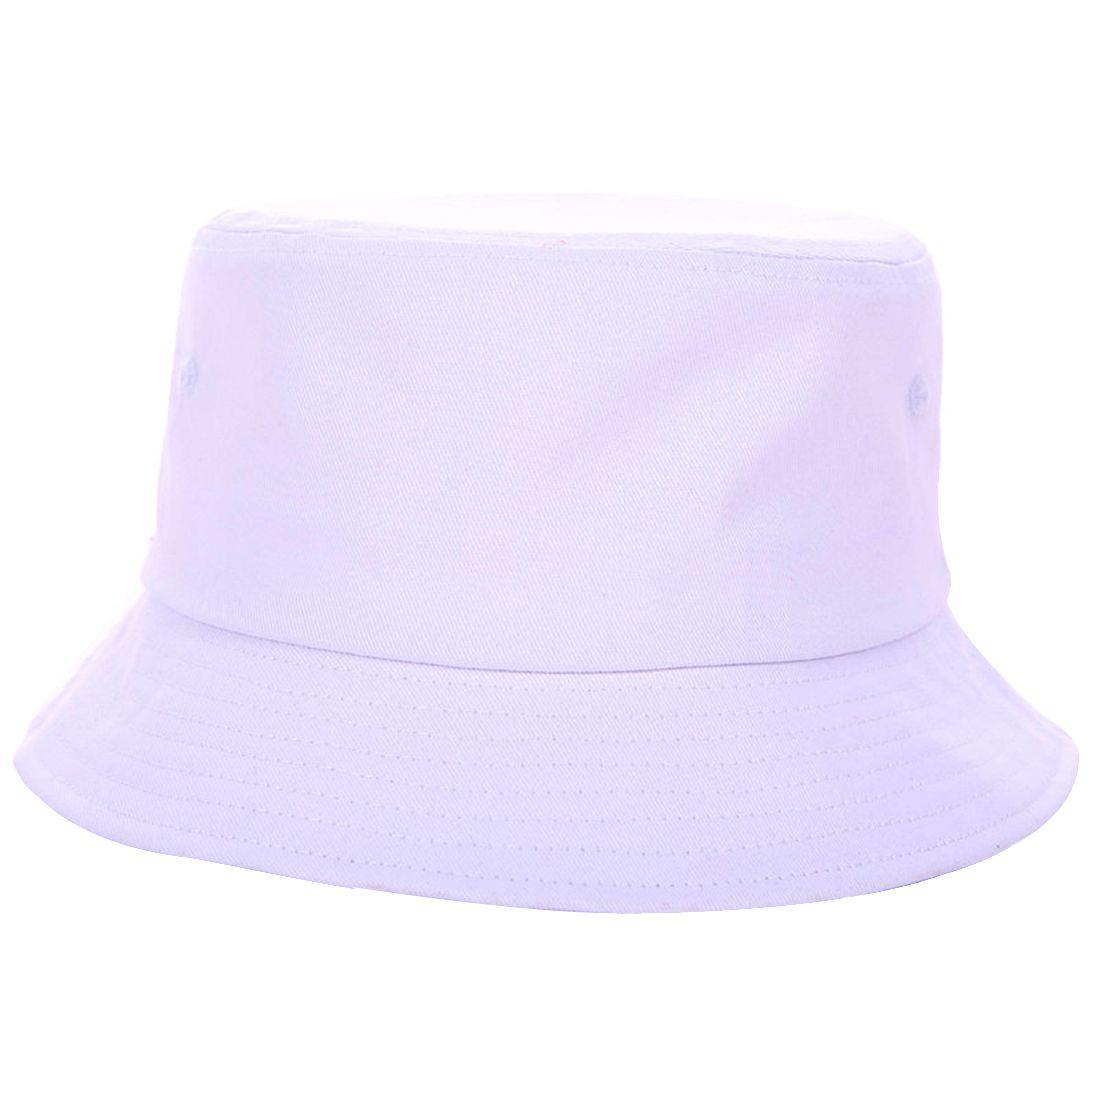 Sombrero de cubo sin estructura de sarga de algodón promocional